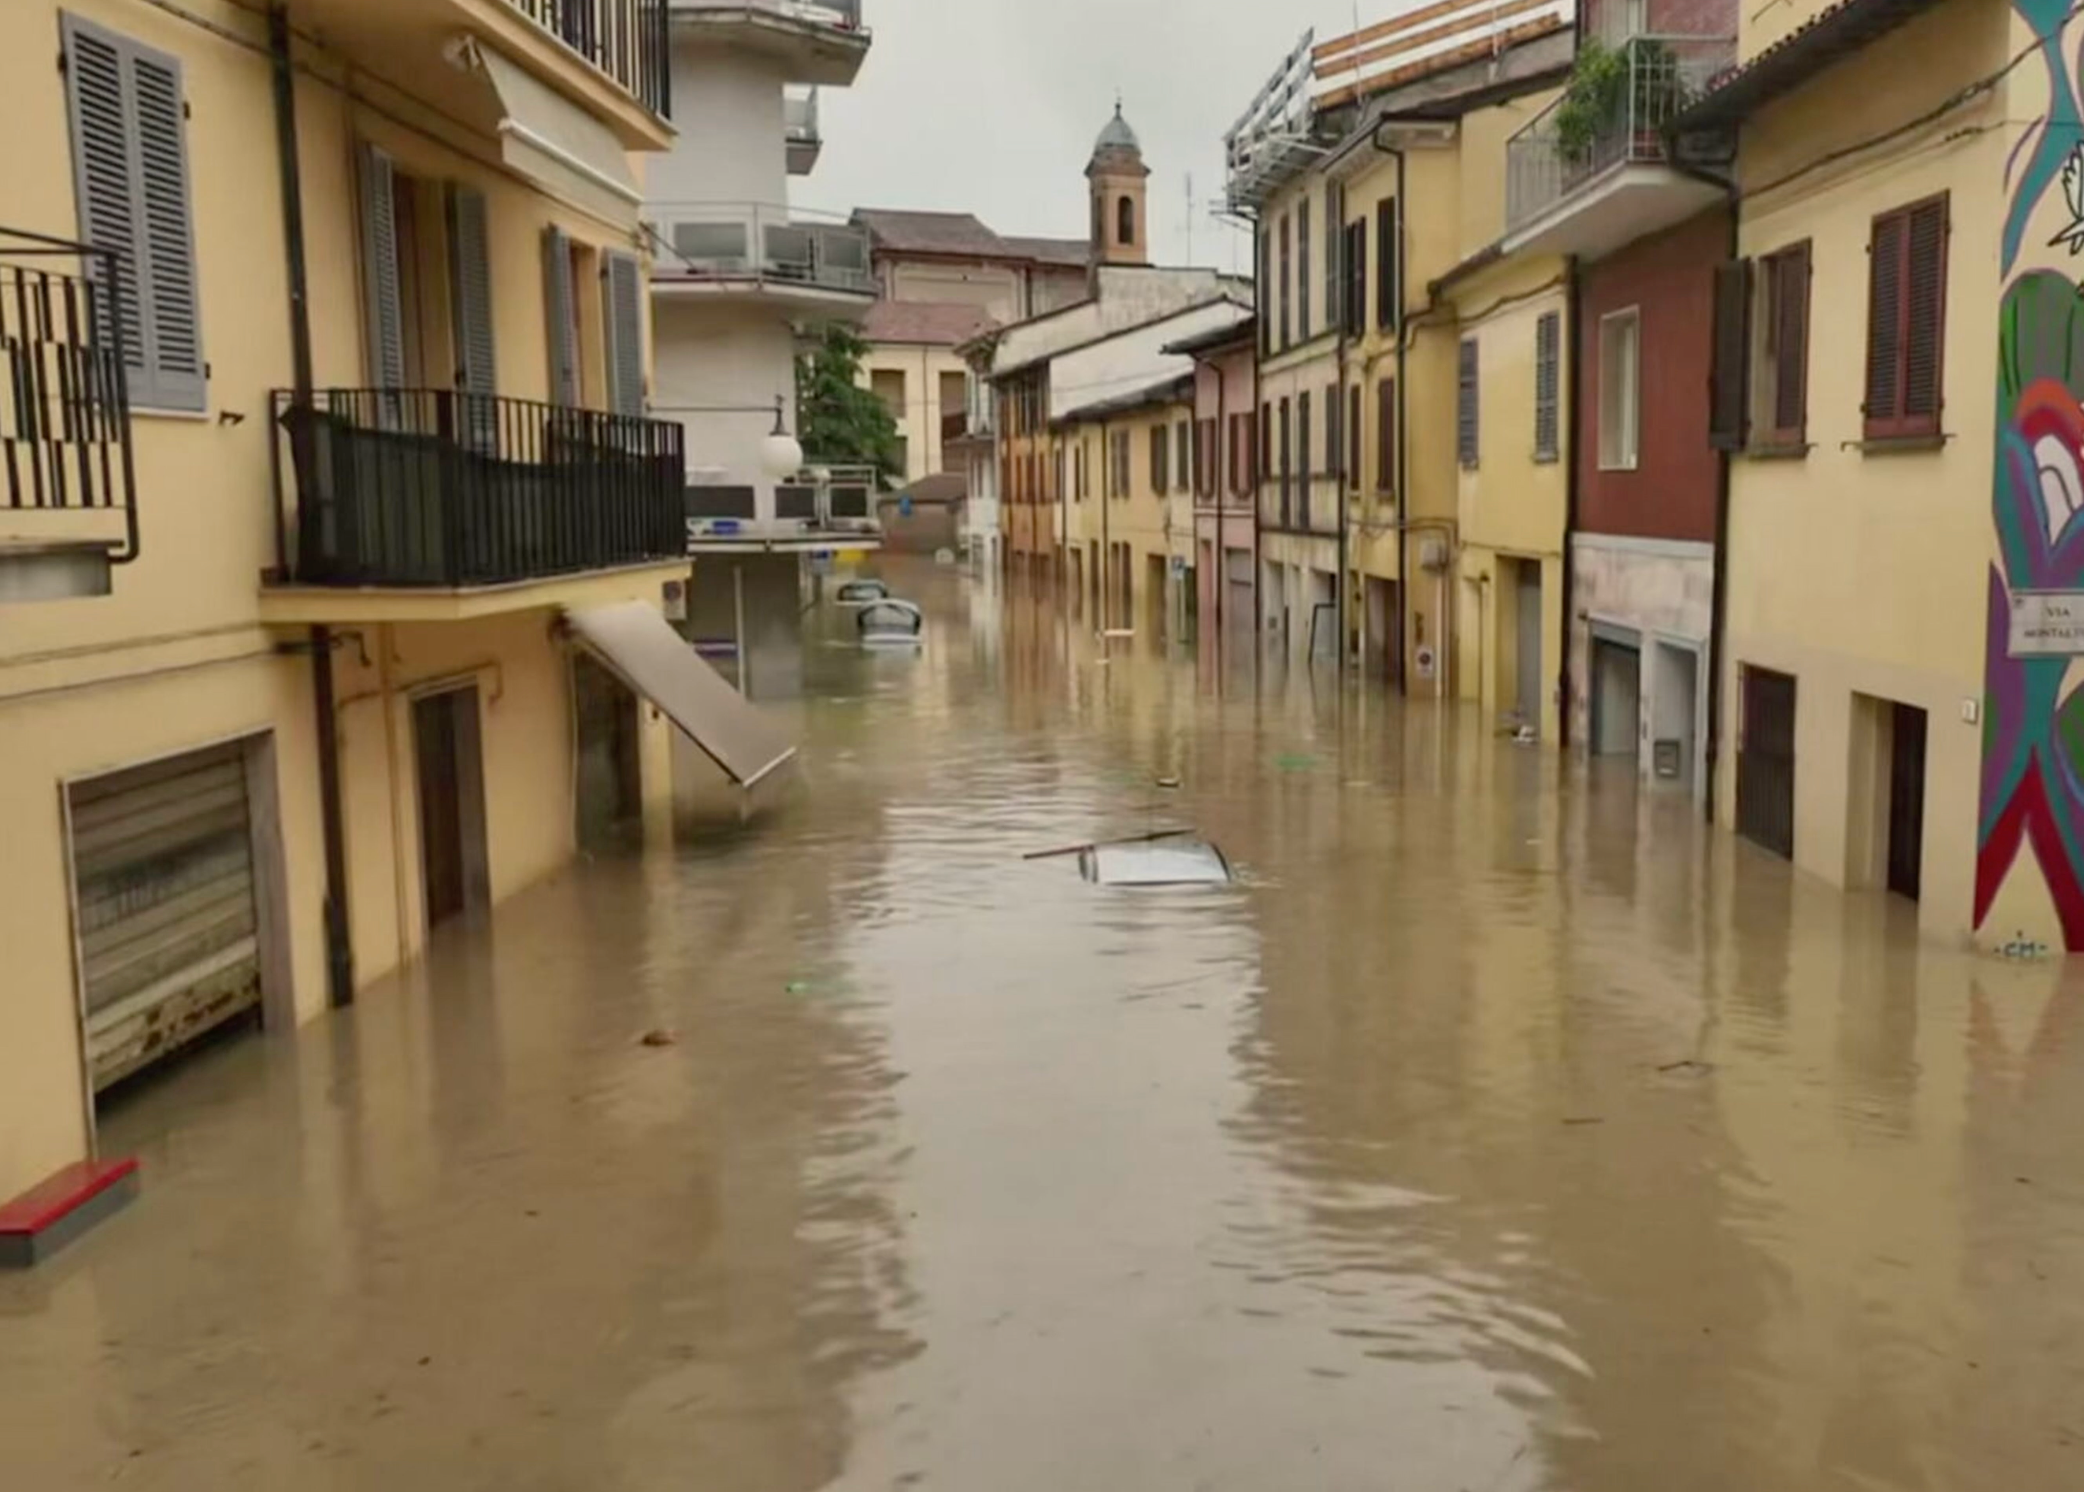 In Emilia Romagna il suolo non è in grado di drenare l’acqua